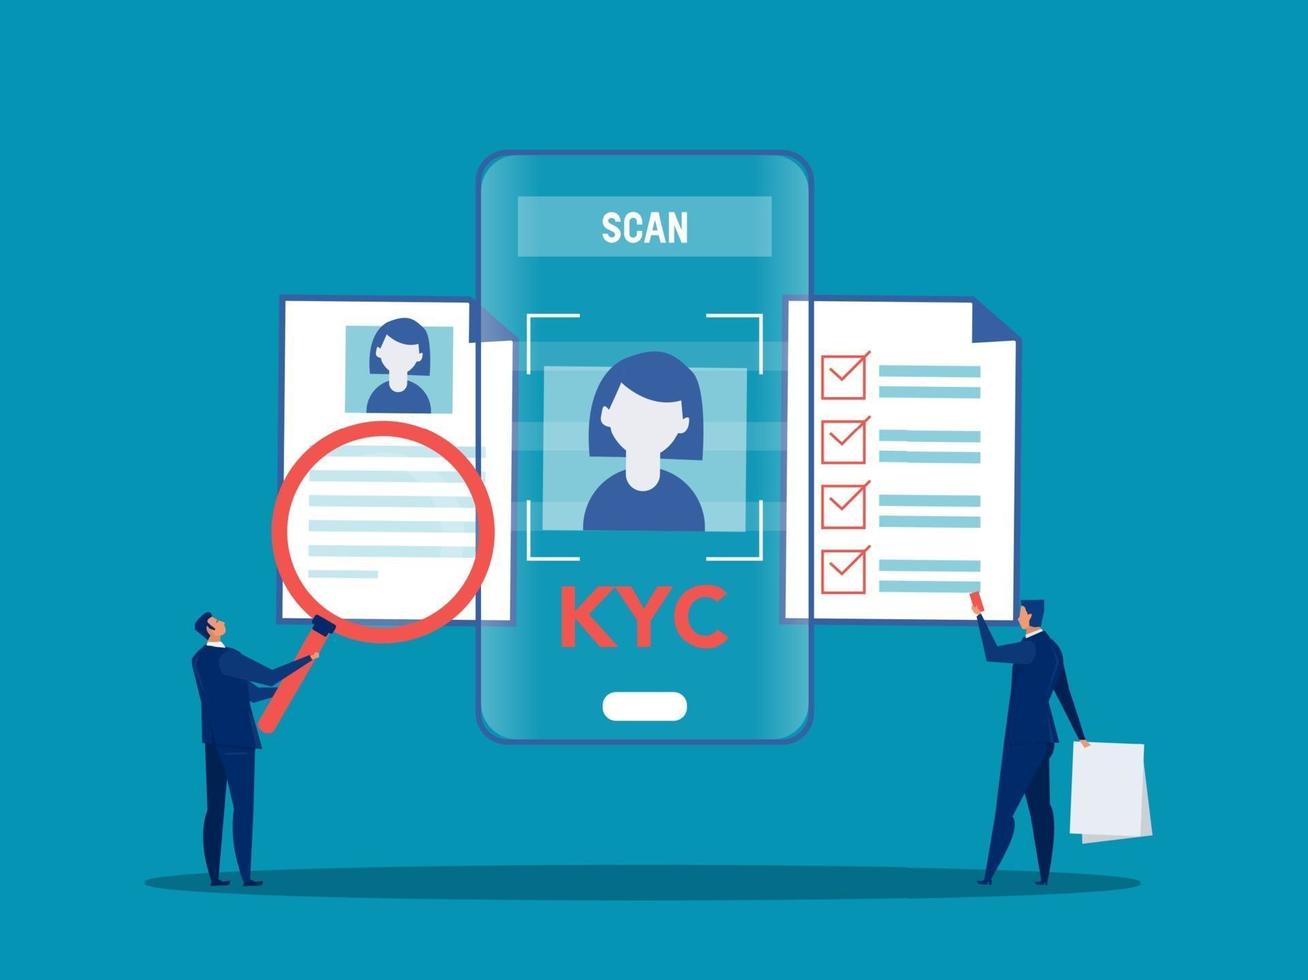 kyc ou conheça seu cliente com empresário verificando a identidade do conceito de seus clientes nos futuros parceiros por meio de uma lupa ilustradora vetorial vetor